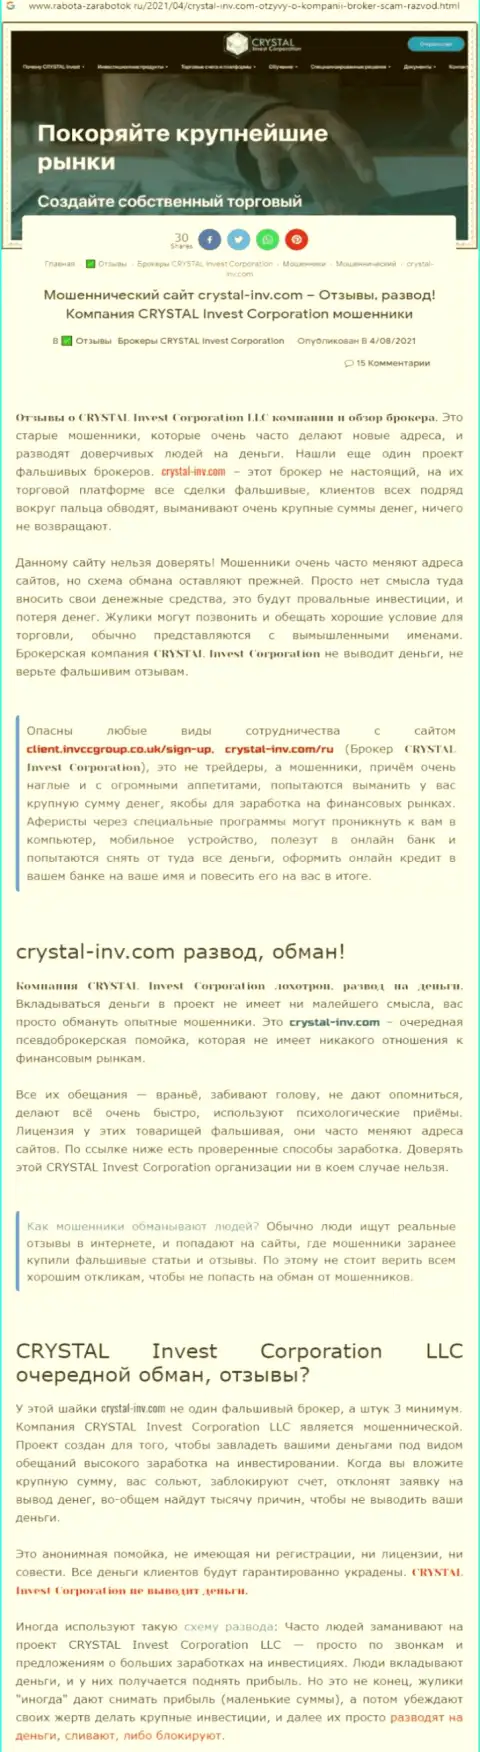 Материал, разоблачающий контору CrystalInvestCorporation, позаимствованный с сайта с обзорами различных организаций